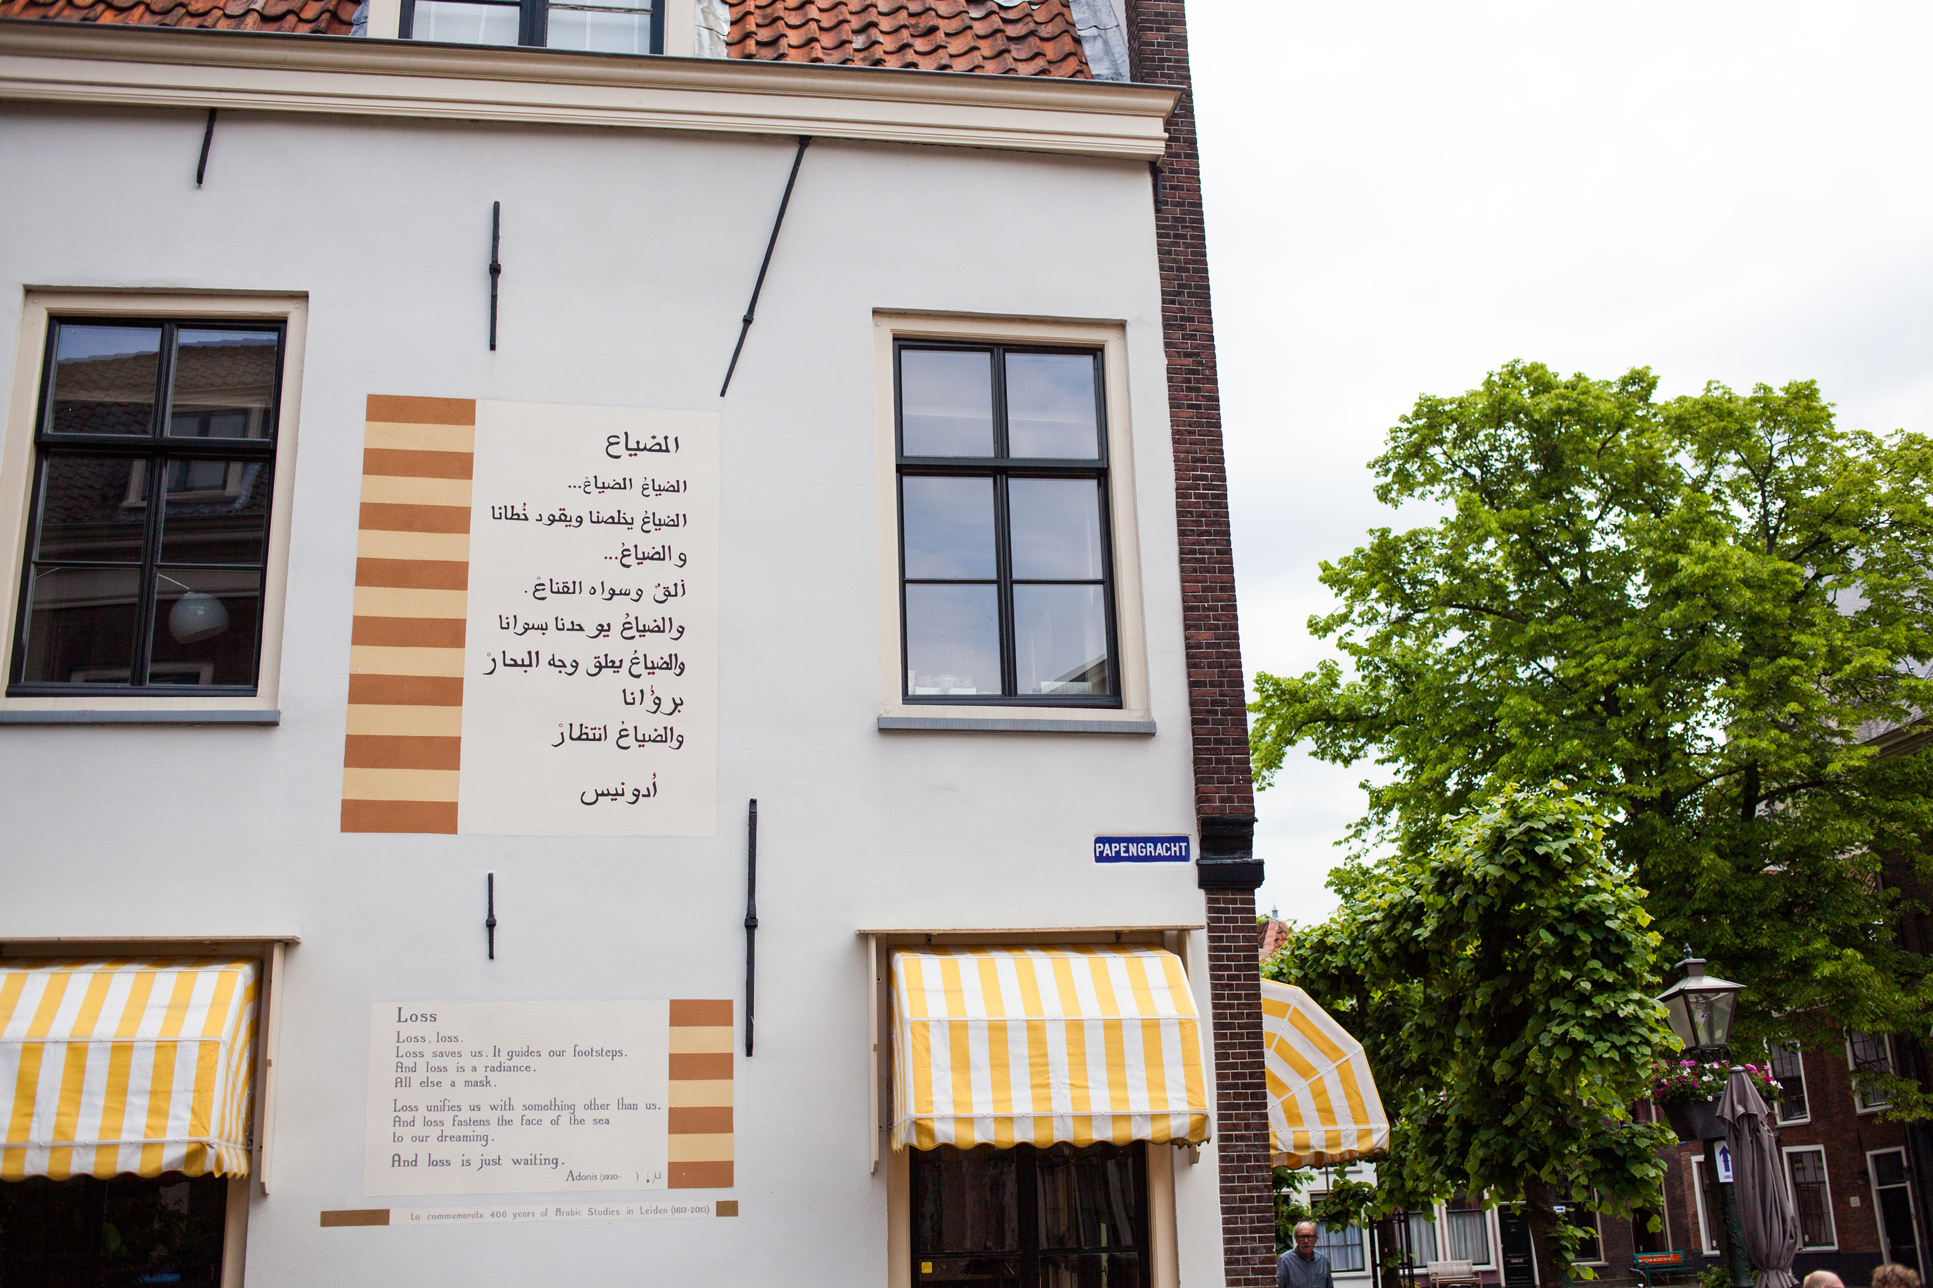 Foto: Muurgedichten // muurgedichten - Leiden - cultuur - bezienswaardigheden - wandelen